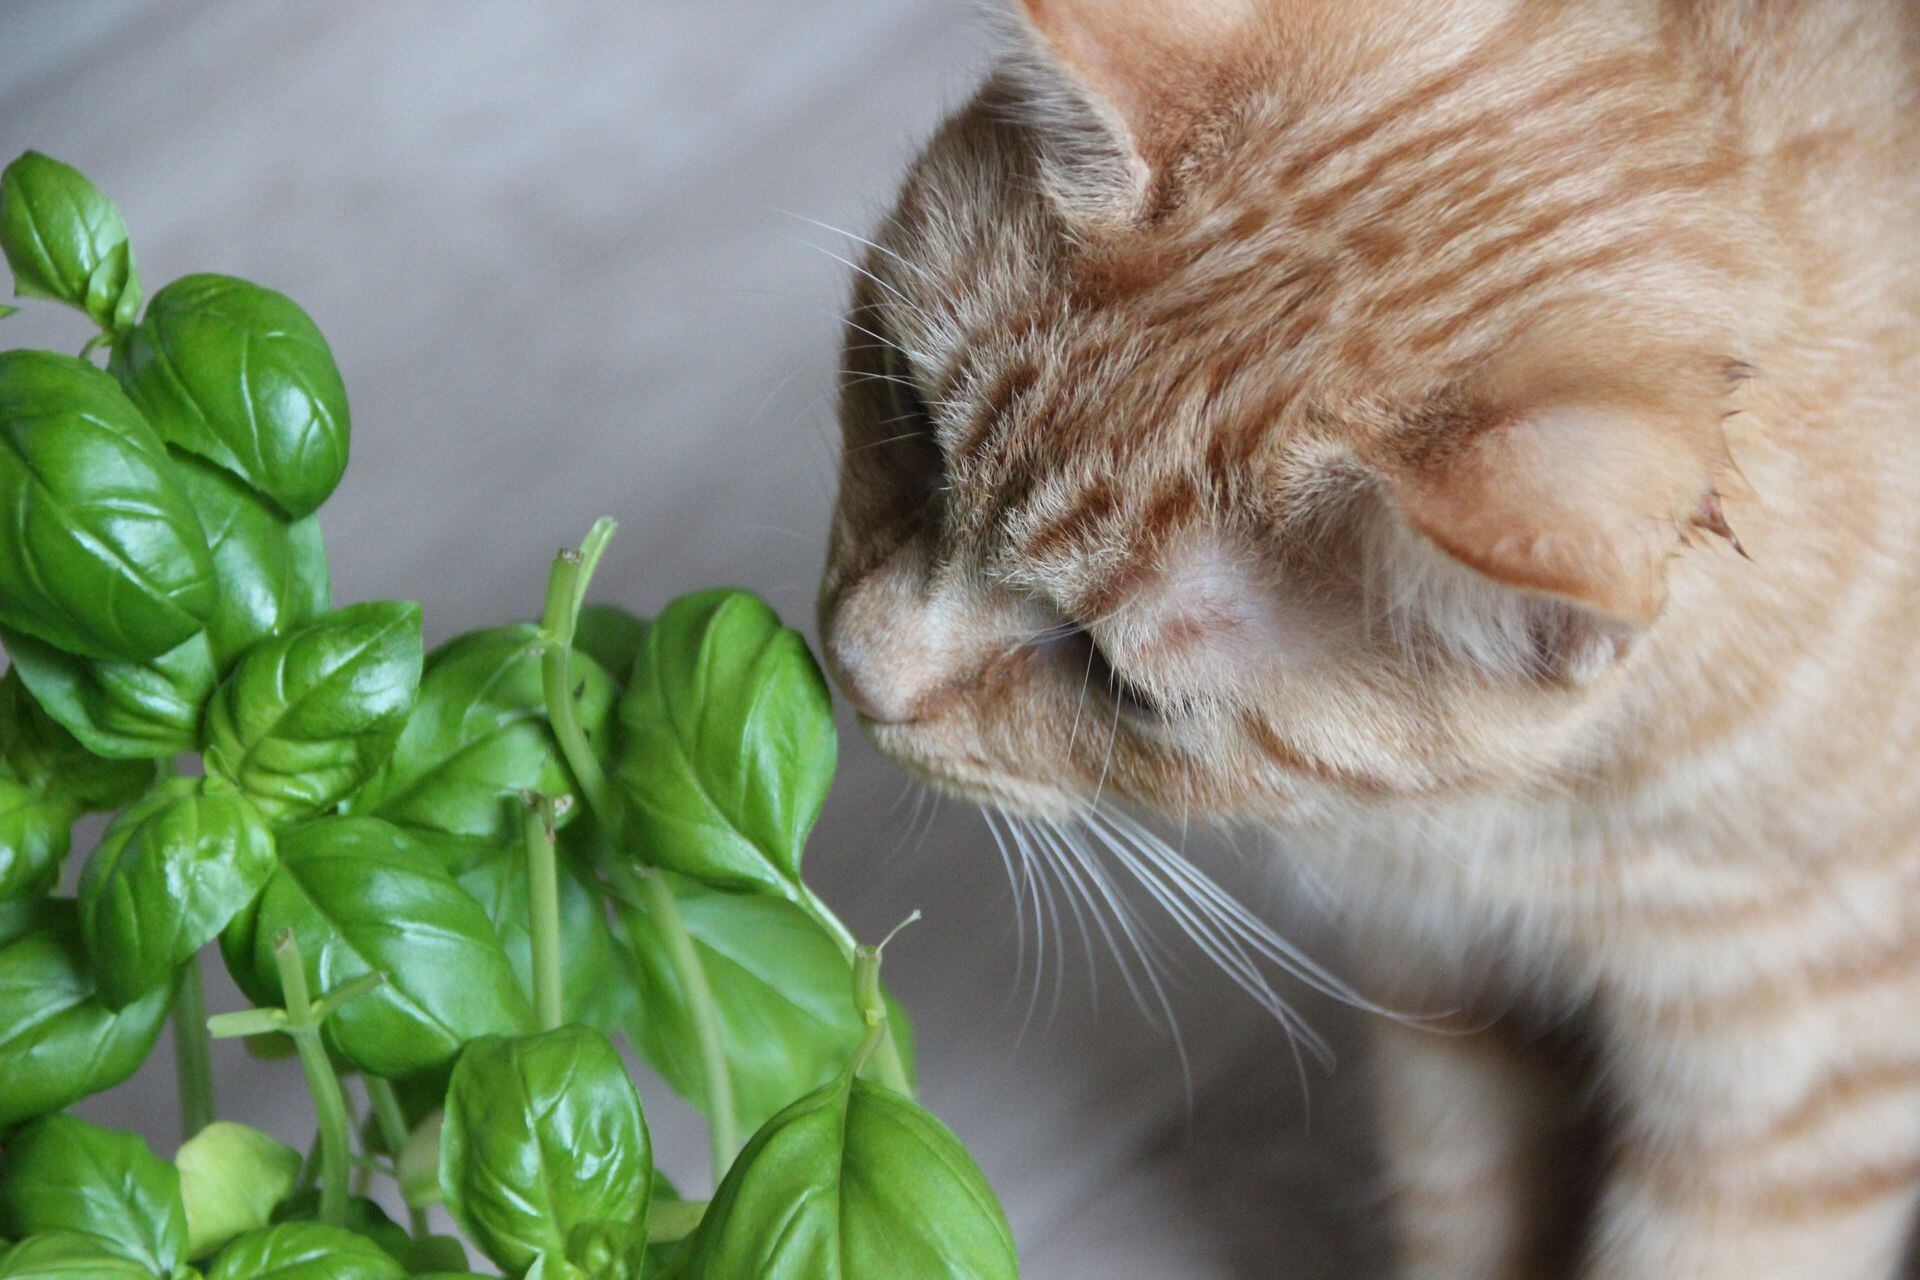 Es habitual que los gatos se sientan atraídos por alguna planta nueva